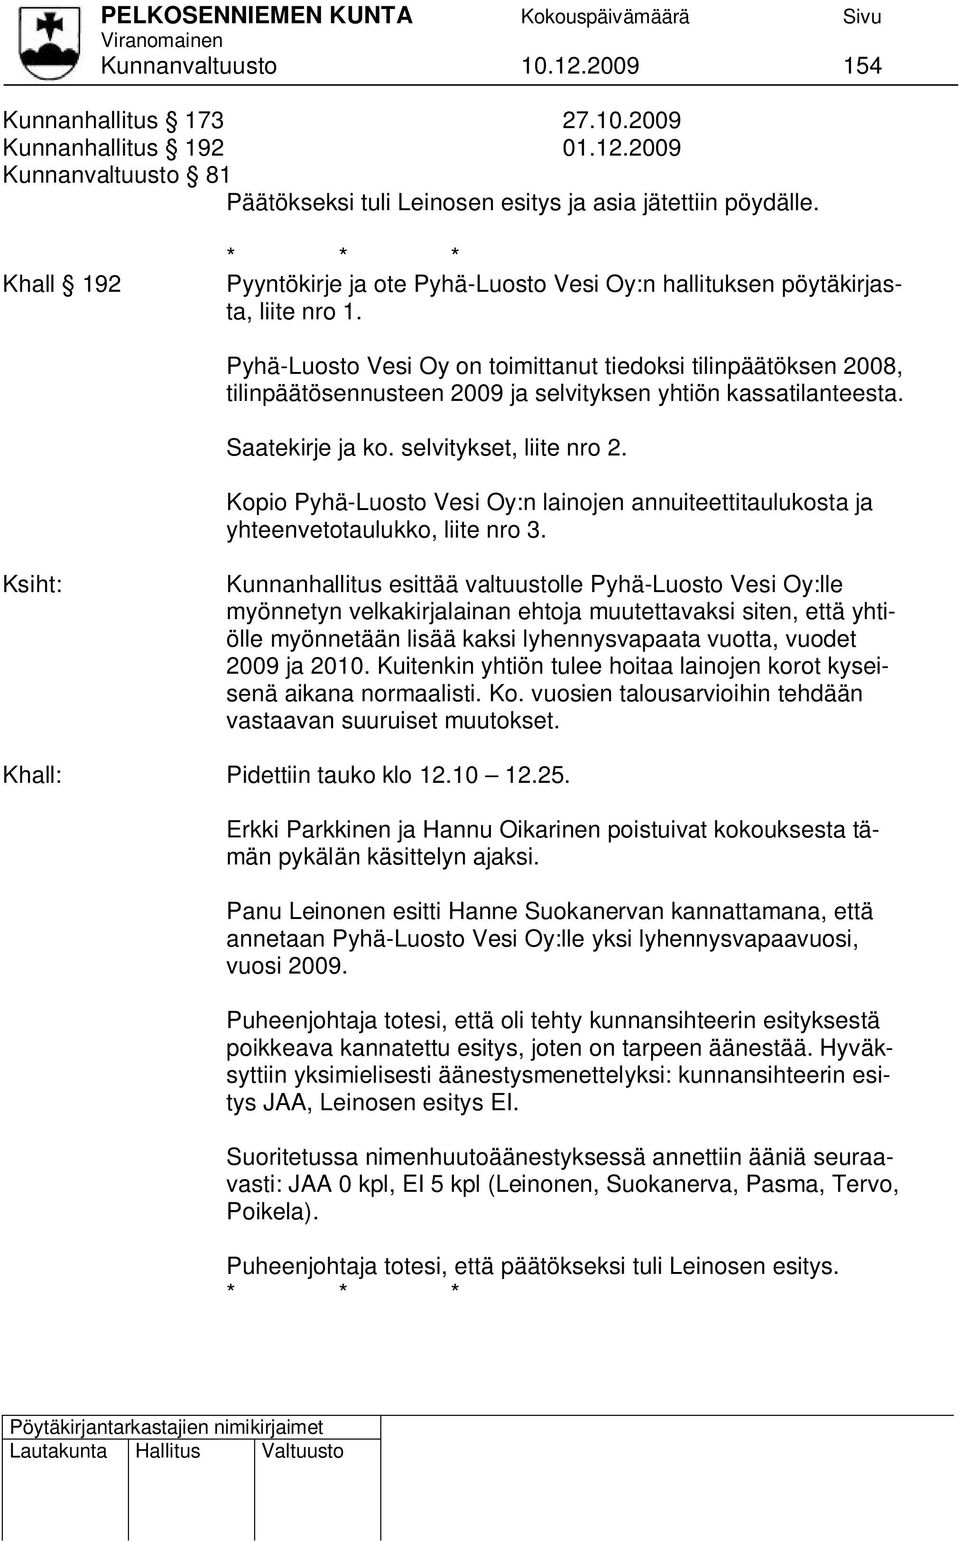 Pyhä-Luosto Vesi Oy on toimittanut tiedoksi tilinpäätöksen 2008, tilinpäätösennusteen 2009 ja selvityksen yhtiön kassatilanteesta. Saatekirje ja ko. selvitykset, liite nro 2.